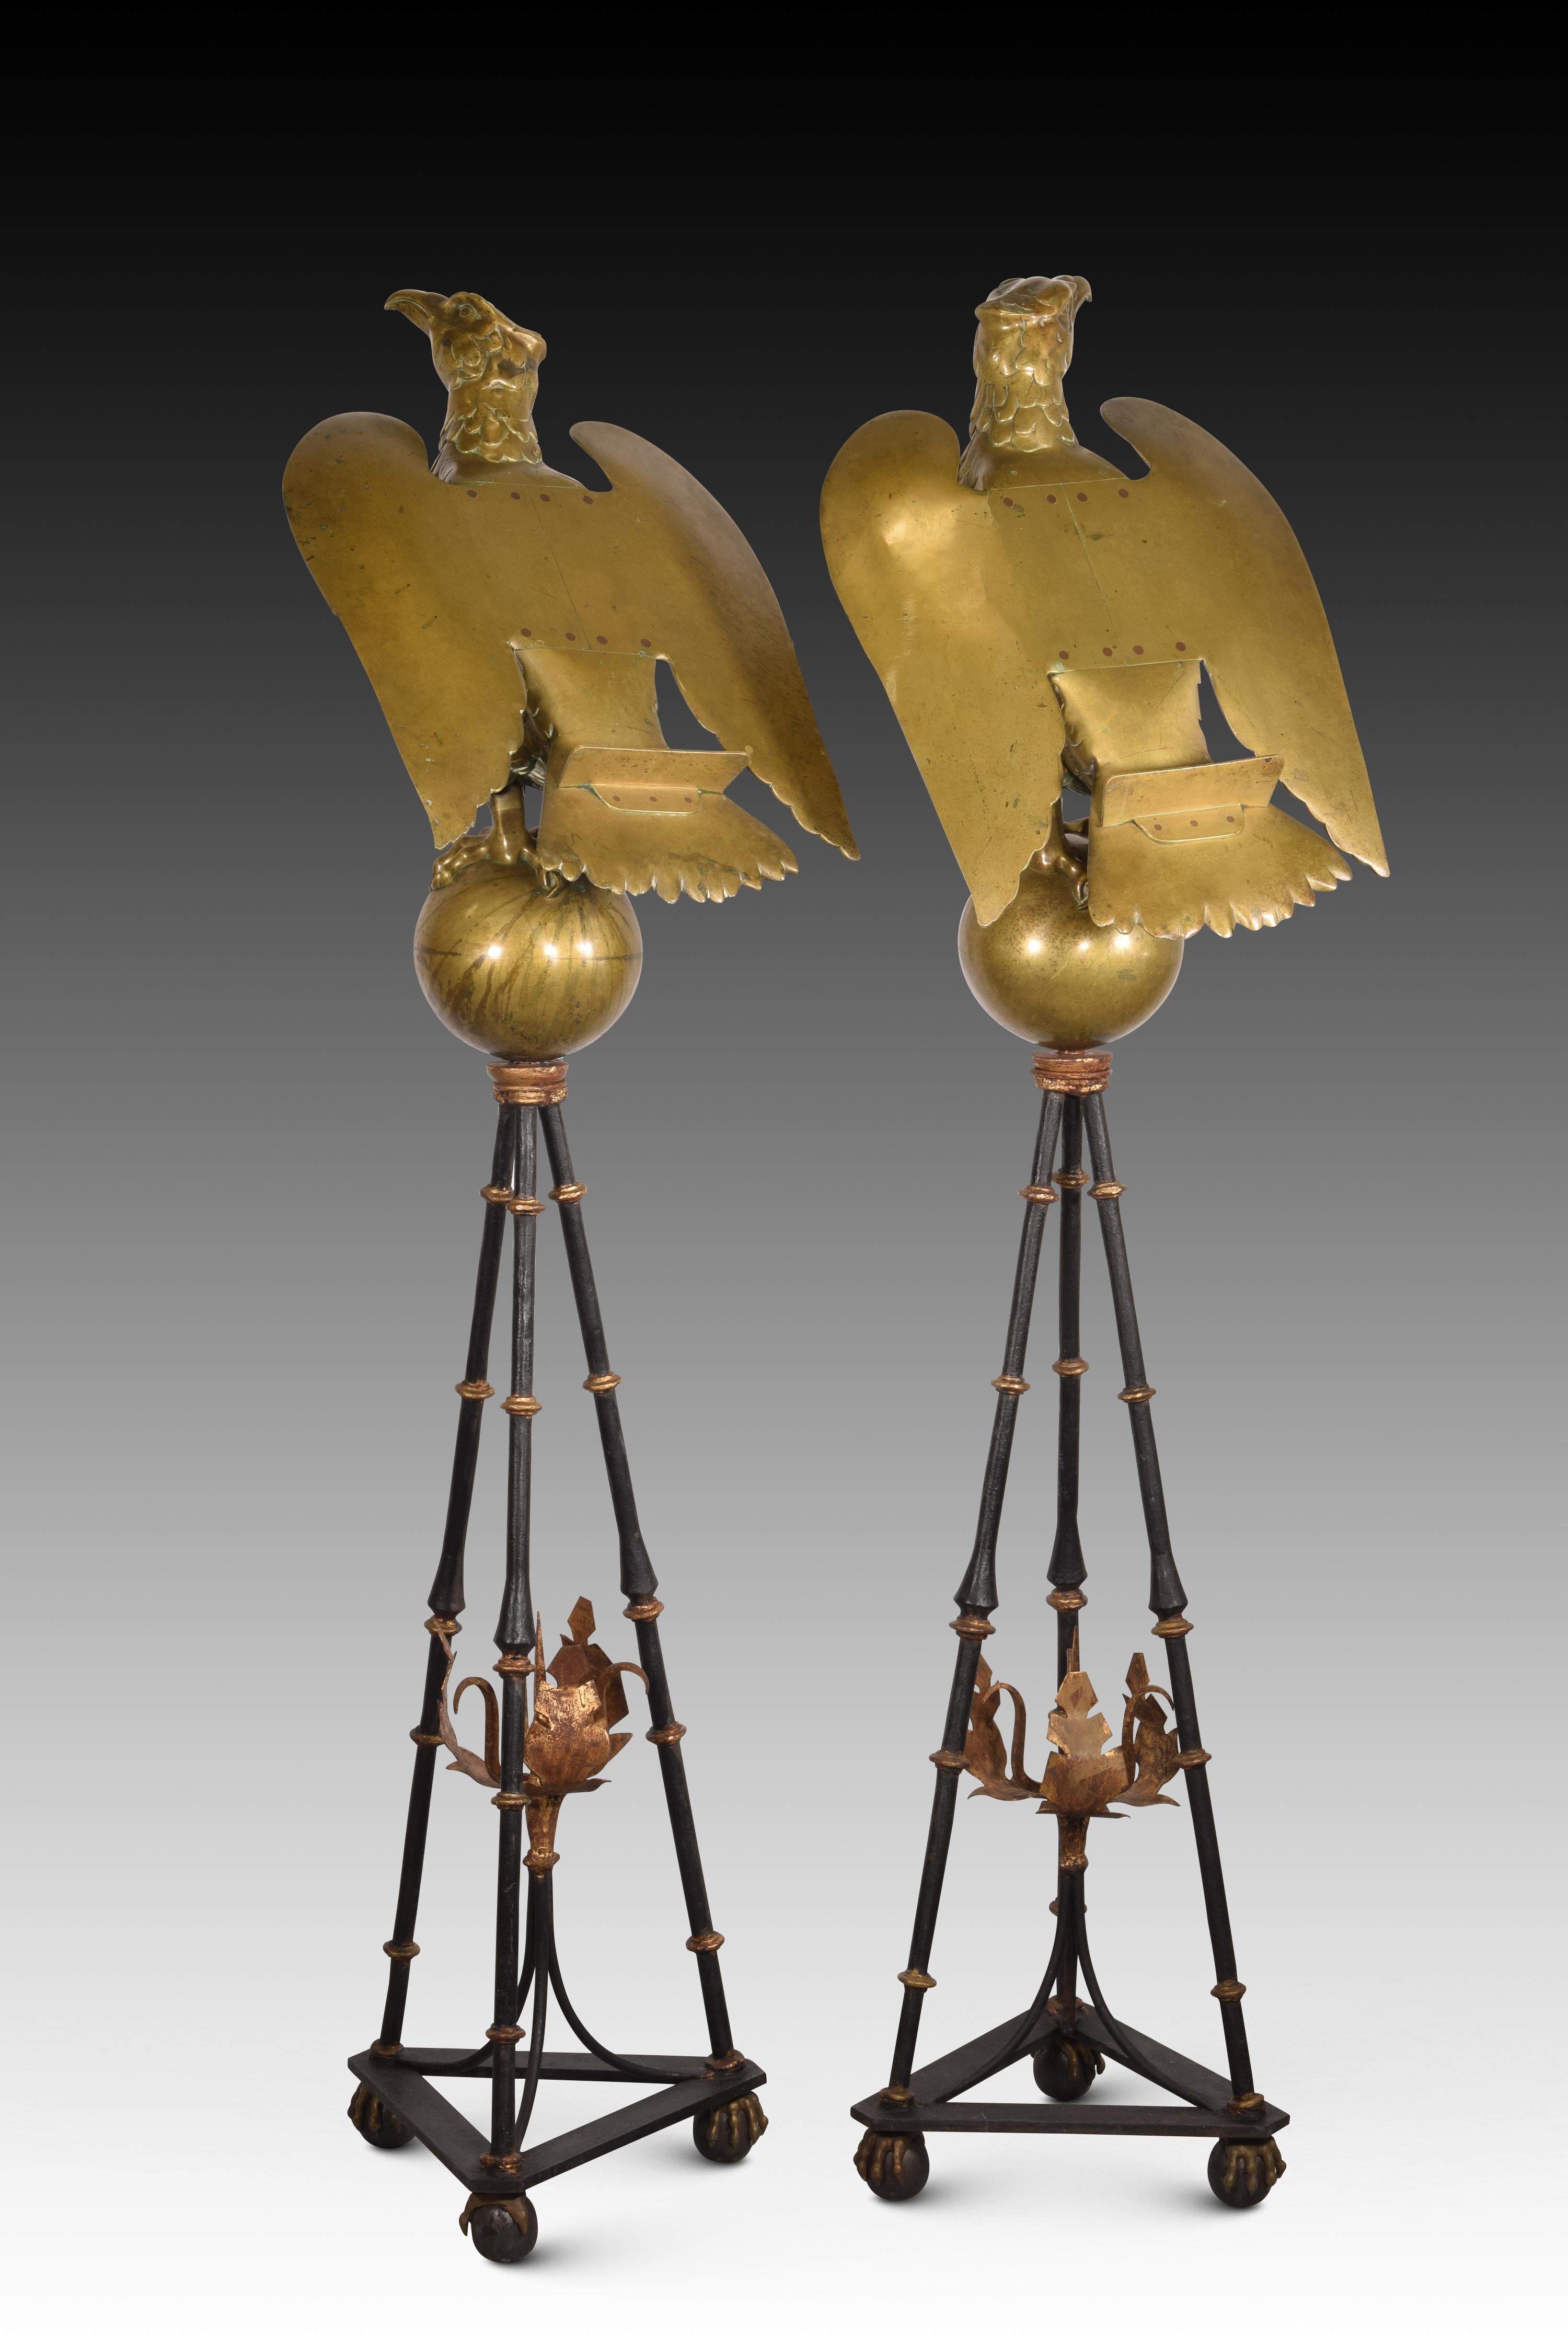 Ein Paar Staffeleien in Form eines Adlers. Bronze, Eisen. 16. bis 17. Jahrhundert.
 Hintere Stützen. 
Ein Paar Rednerpulte mit dreibeinigem Sockel, klauenförmigen Beinen mit Kugeln und einem dreieckigen Teil, aus dem drei balusterförmige Beine